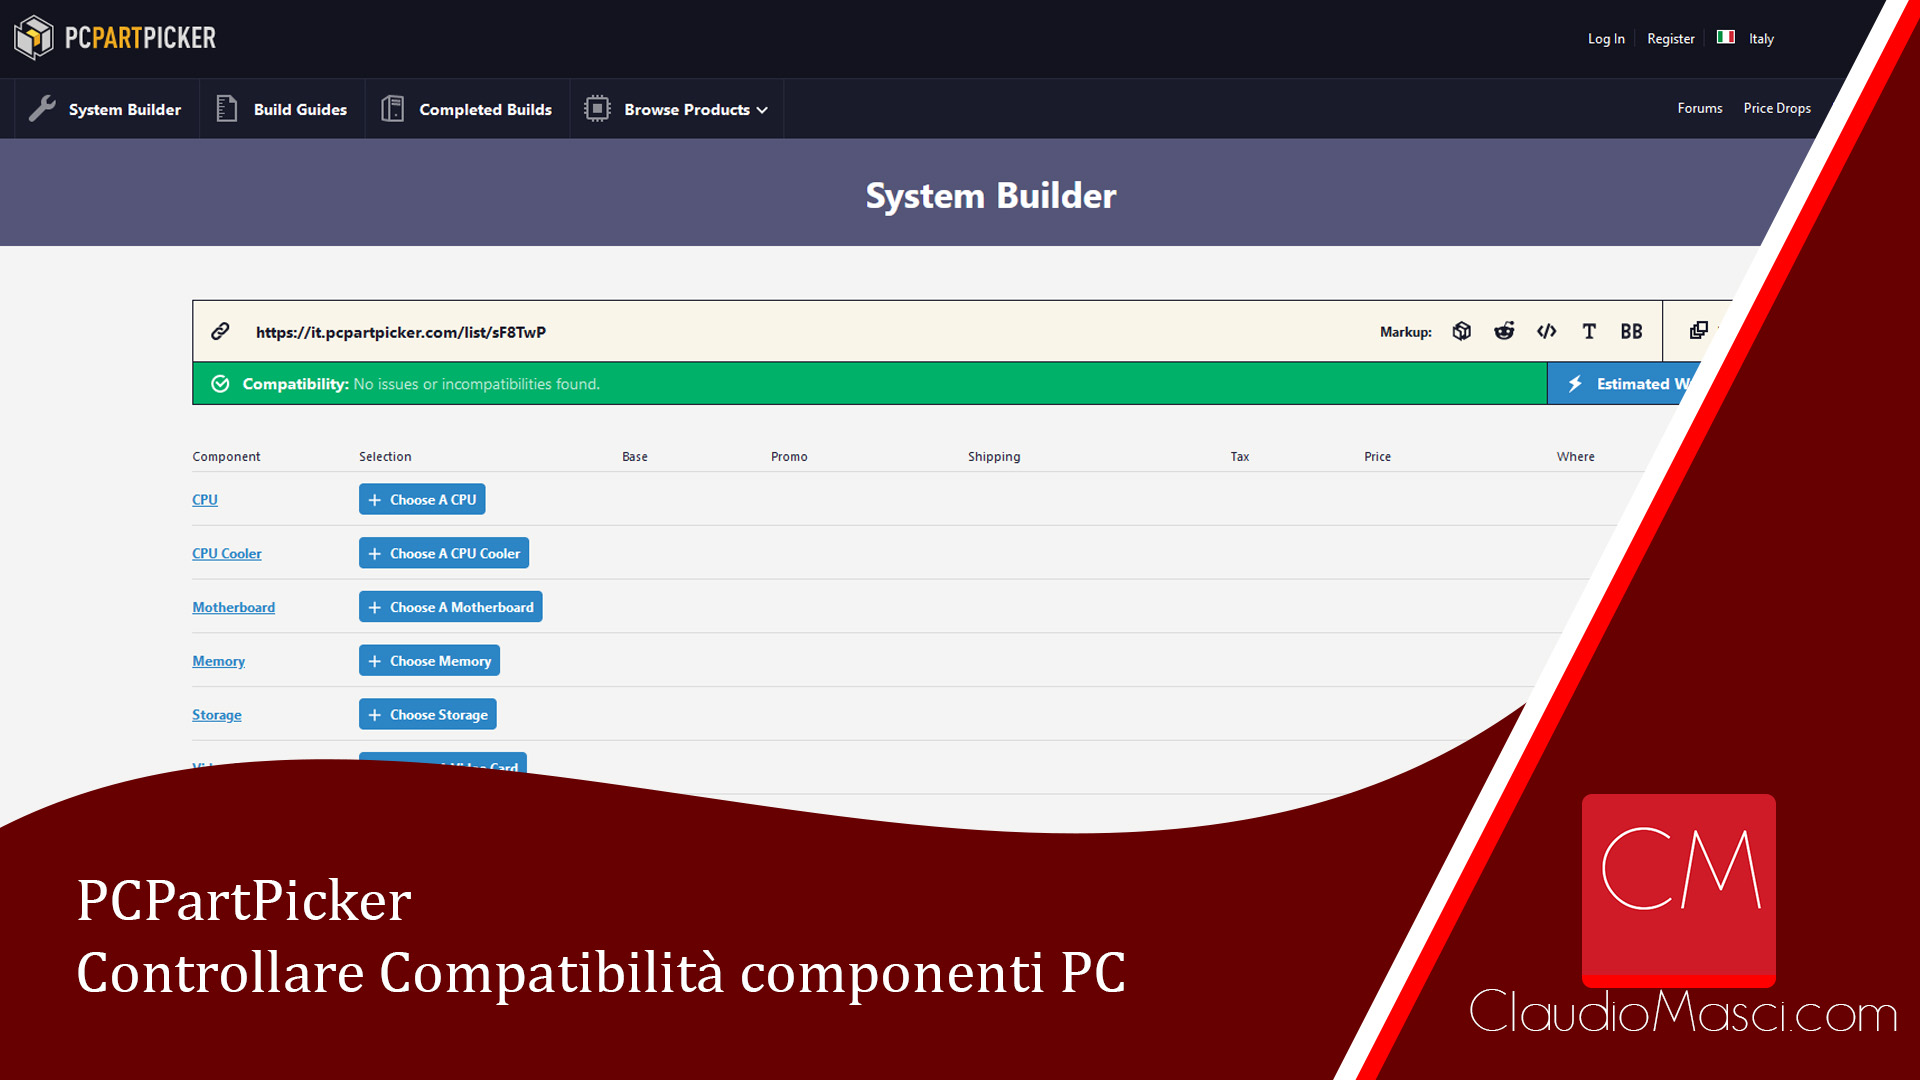 PCPartPicker – Controllare Compatibilità componenti PC